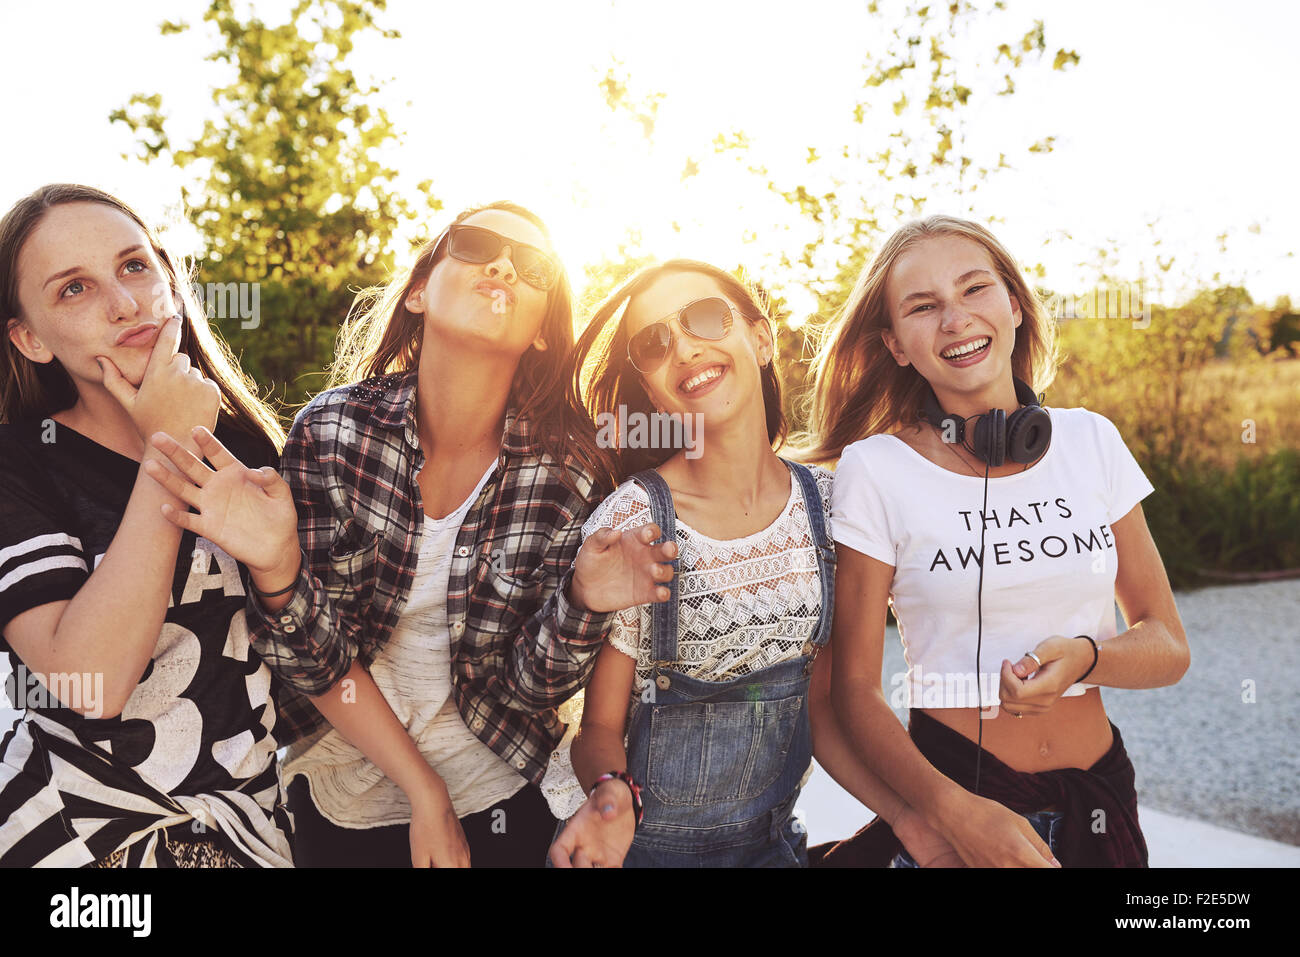 Les adolescents s'amusant sur une journée d'été, sun flare Banque D'Images